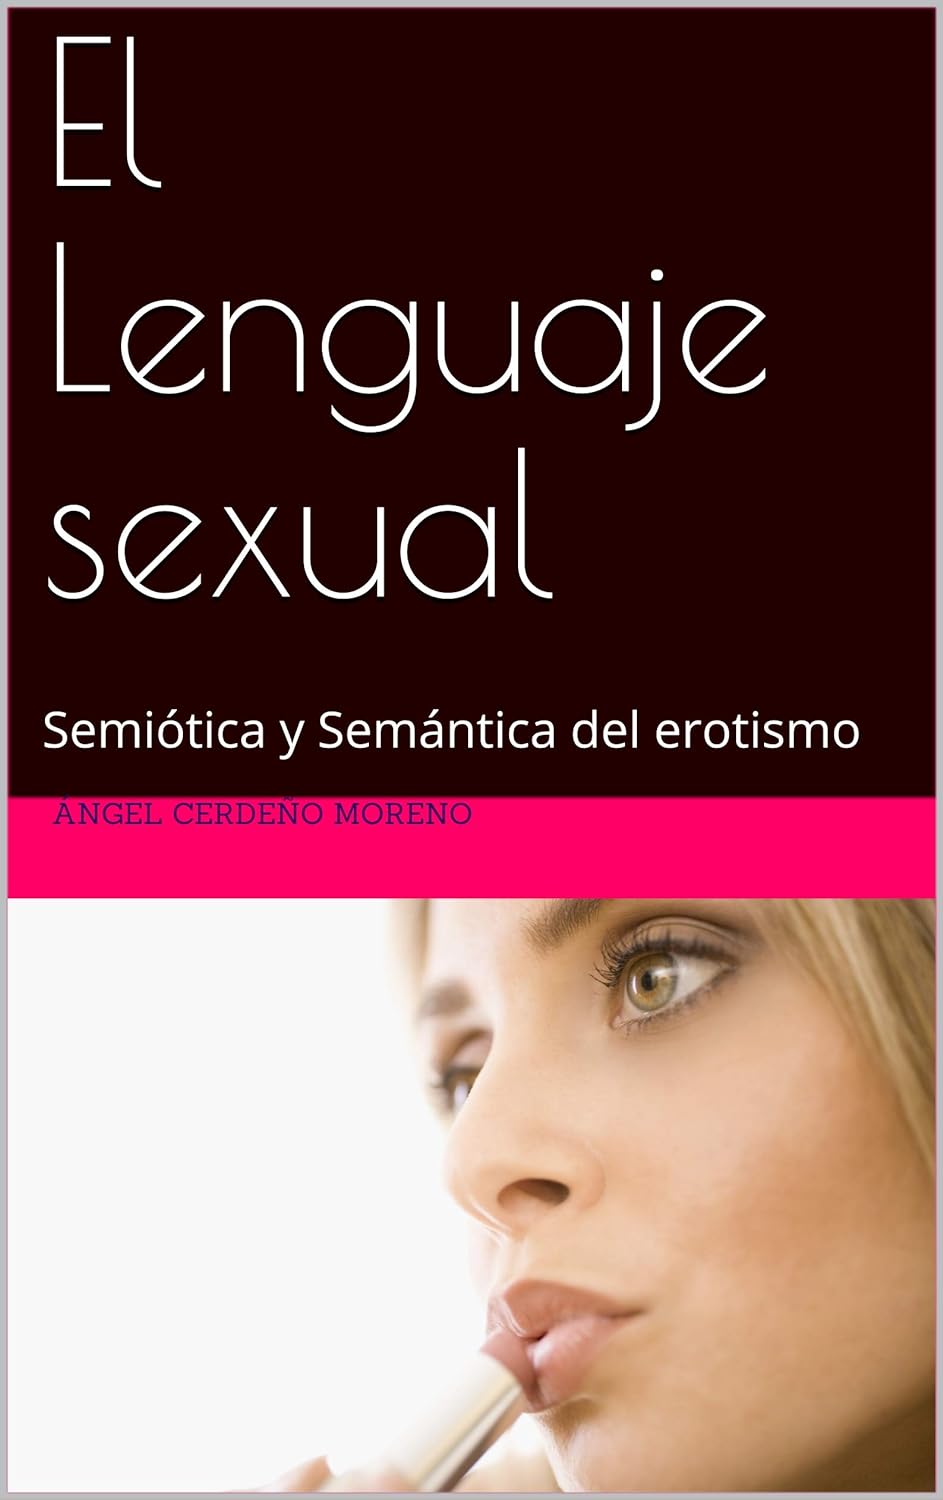 El lenguaje sexual: nueva teoría sobre el erotismo. El Poder del Lenguaje Sexual en el Arte y la Cultura 